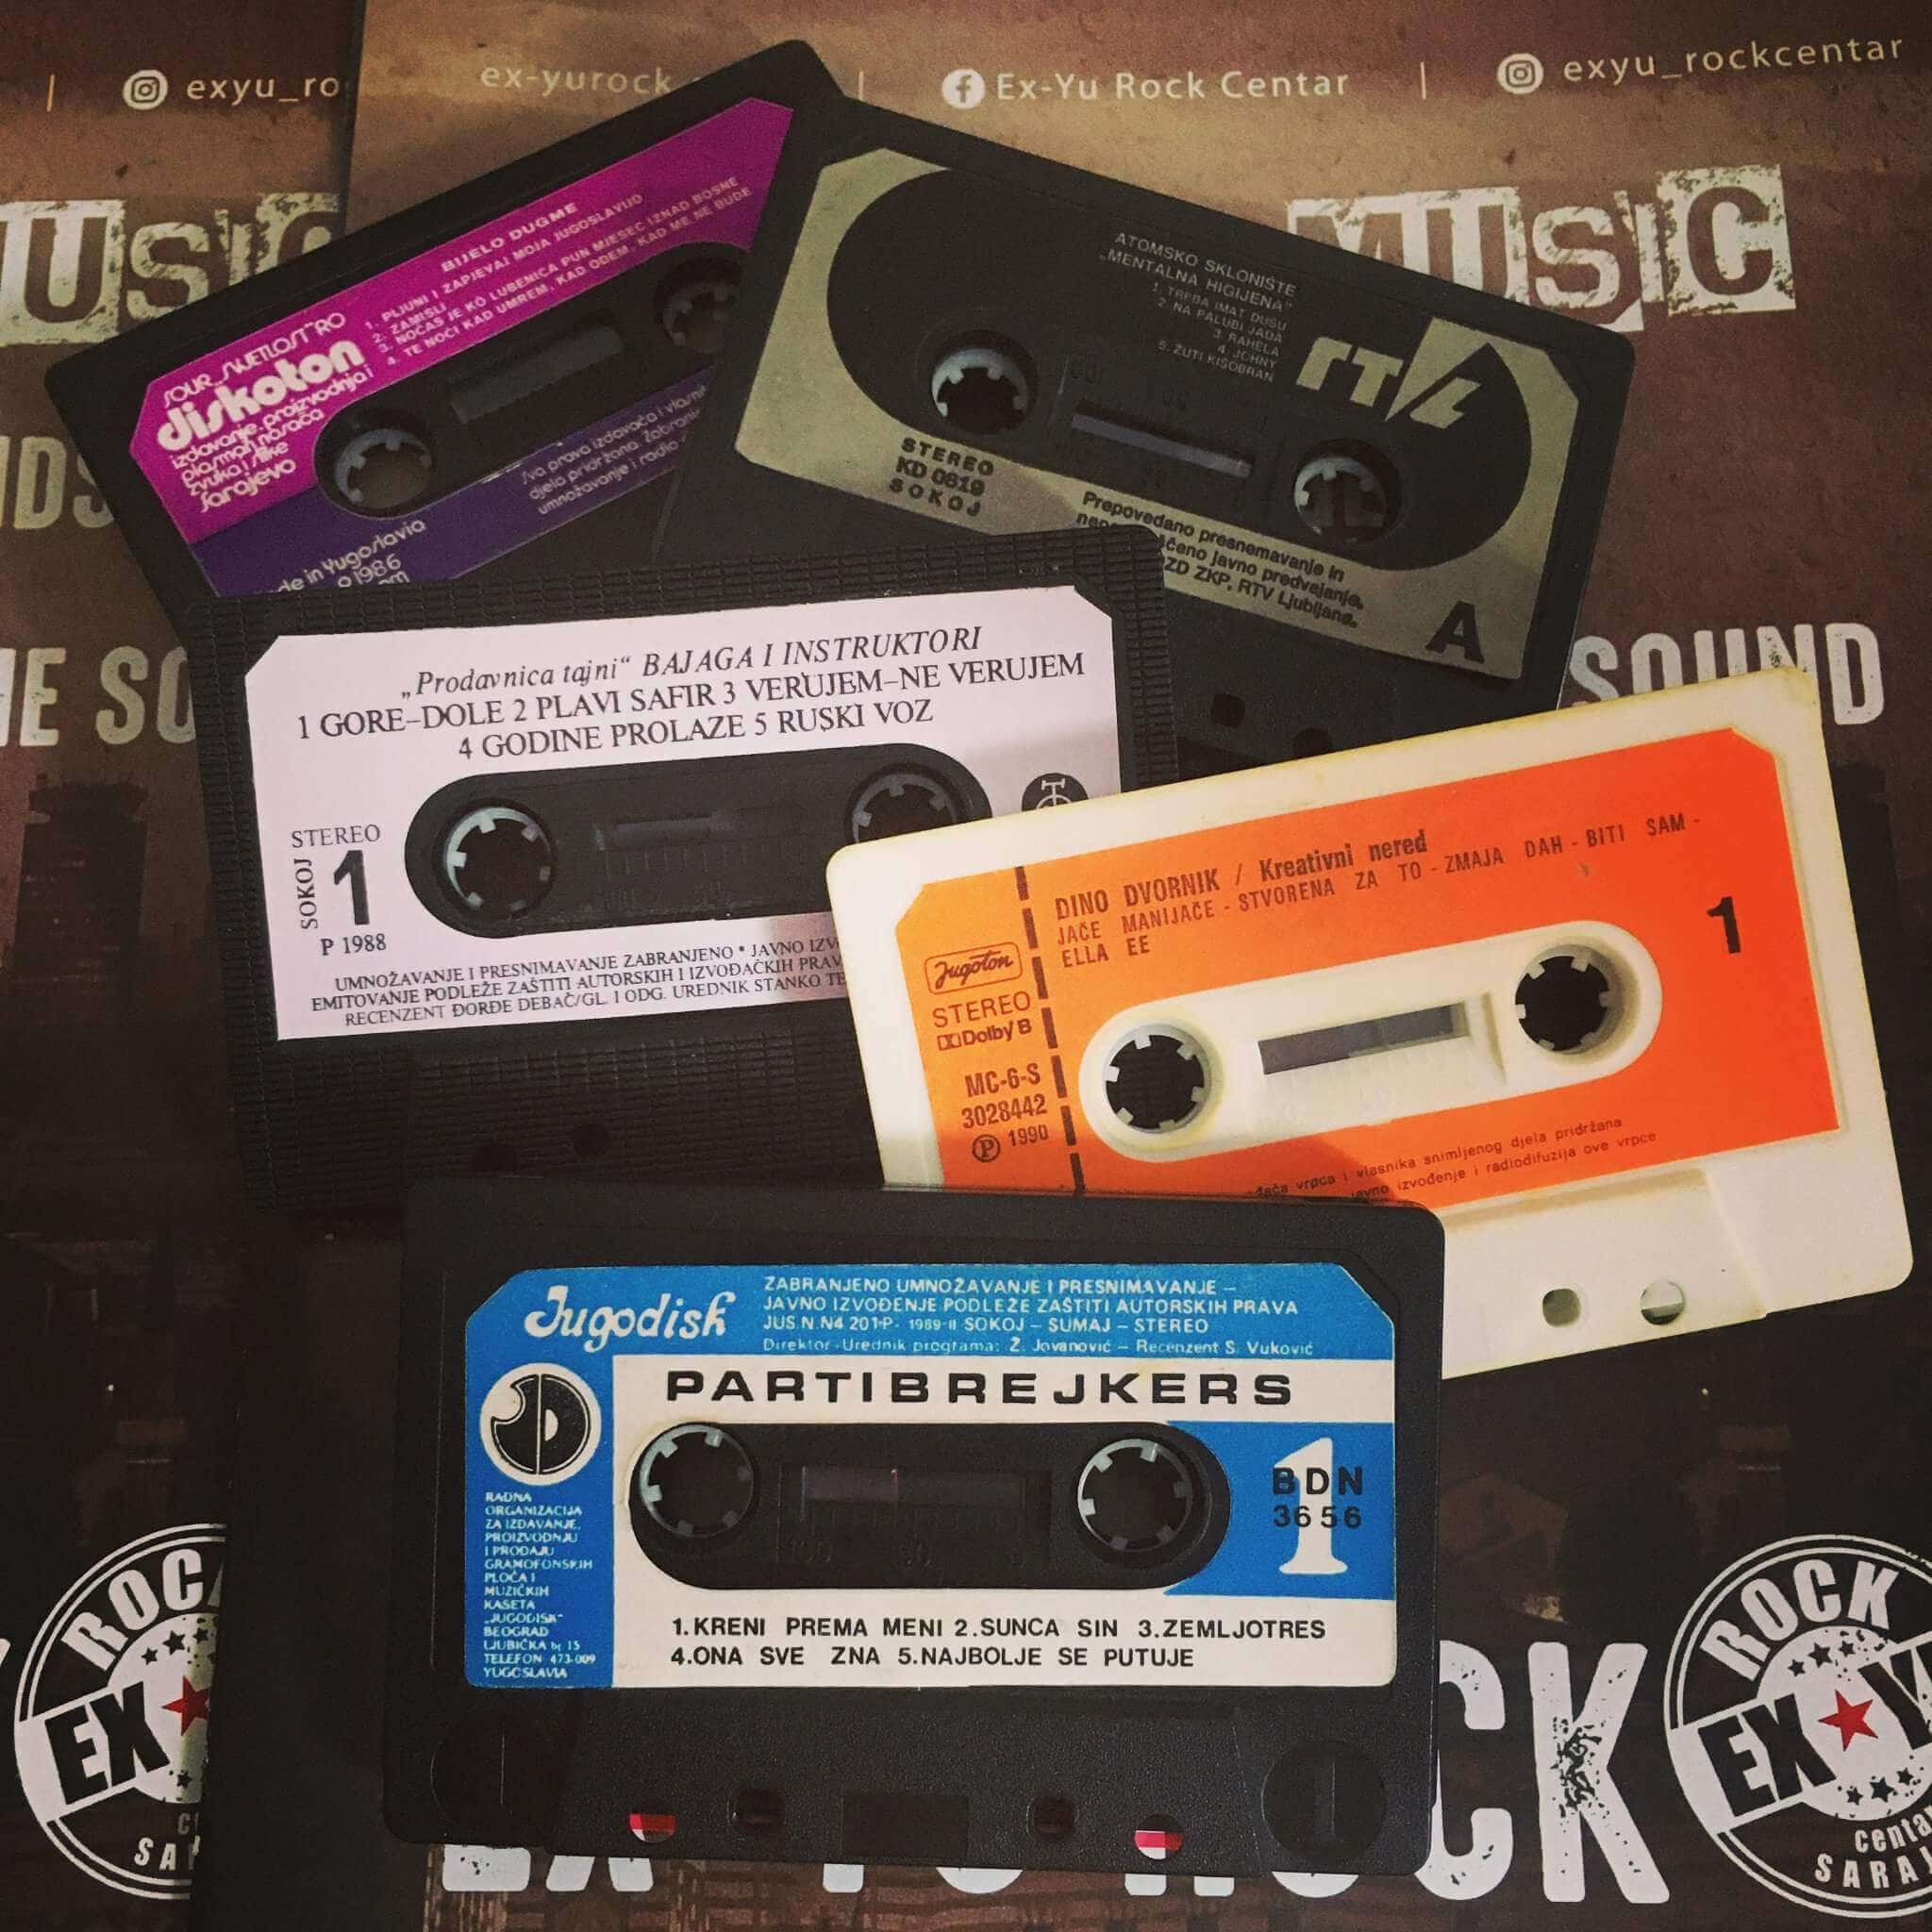 Cassette di gruppi rock jugoslavi